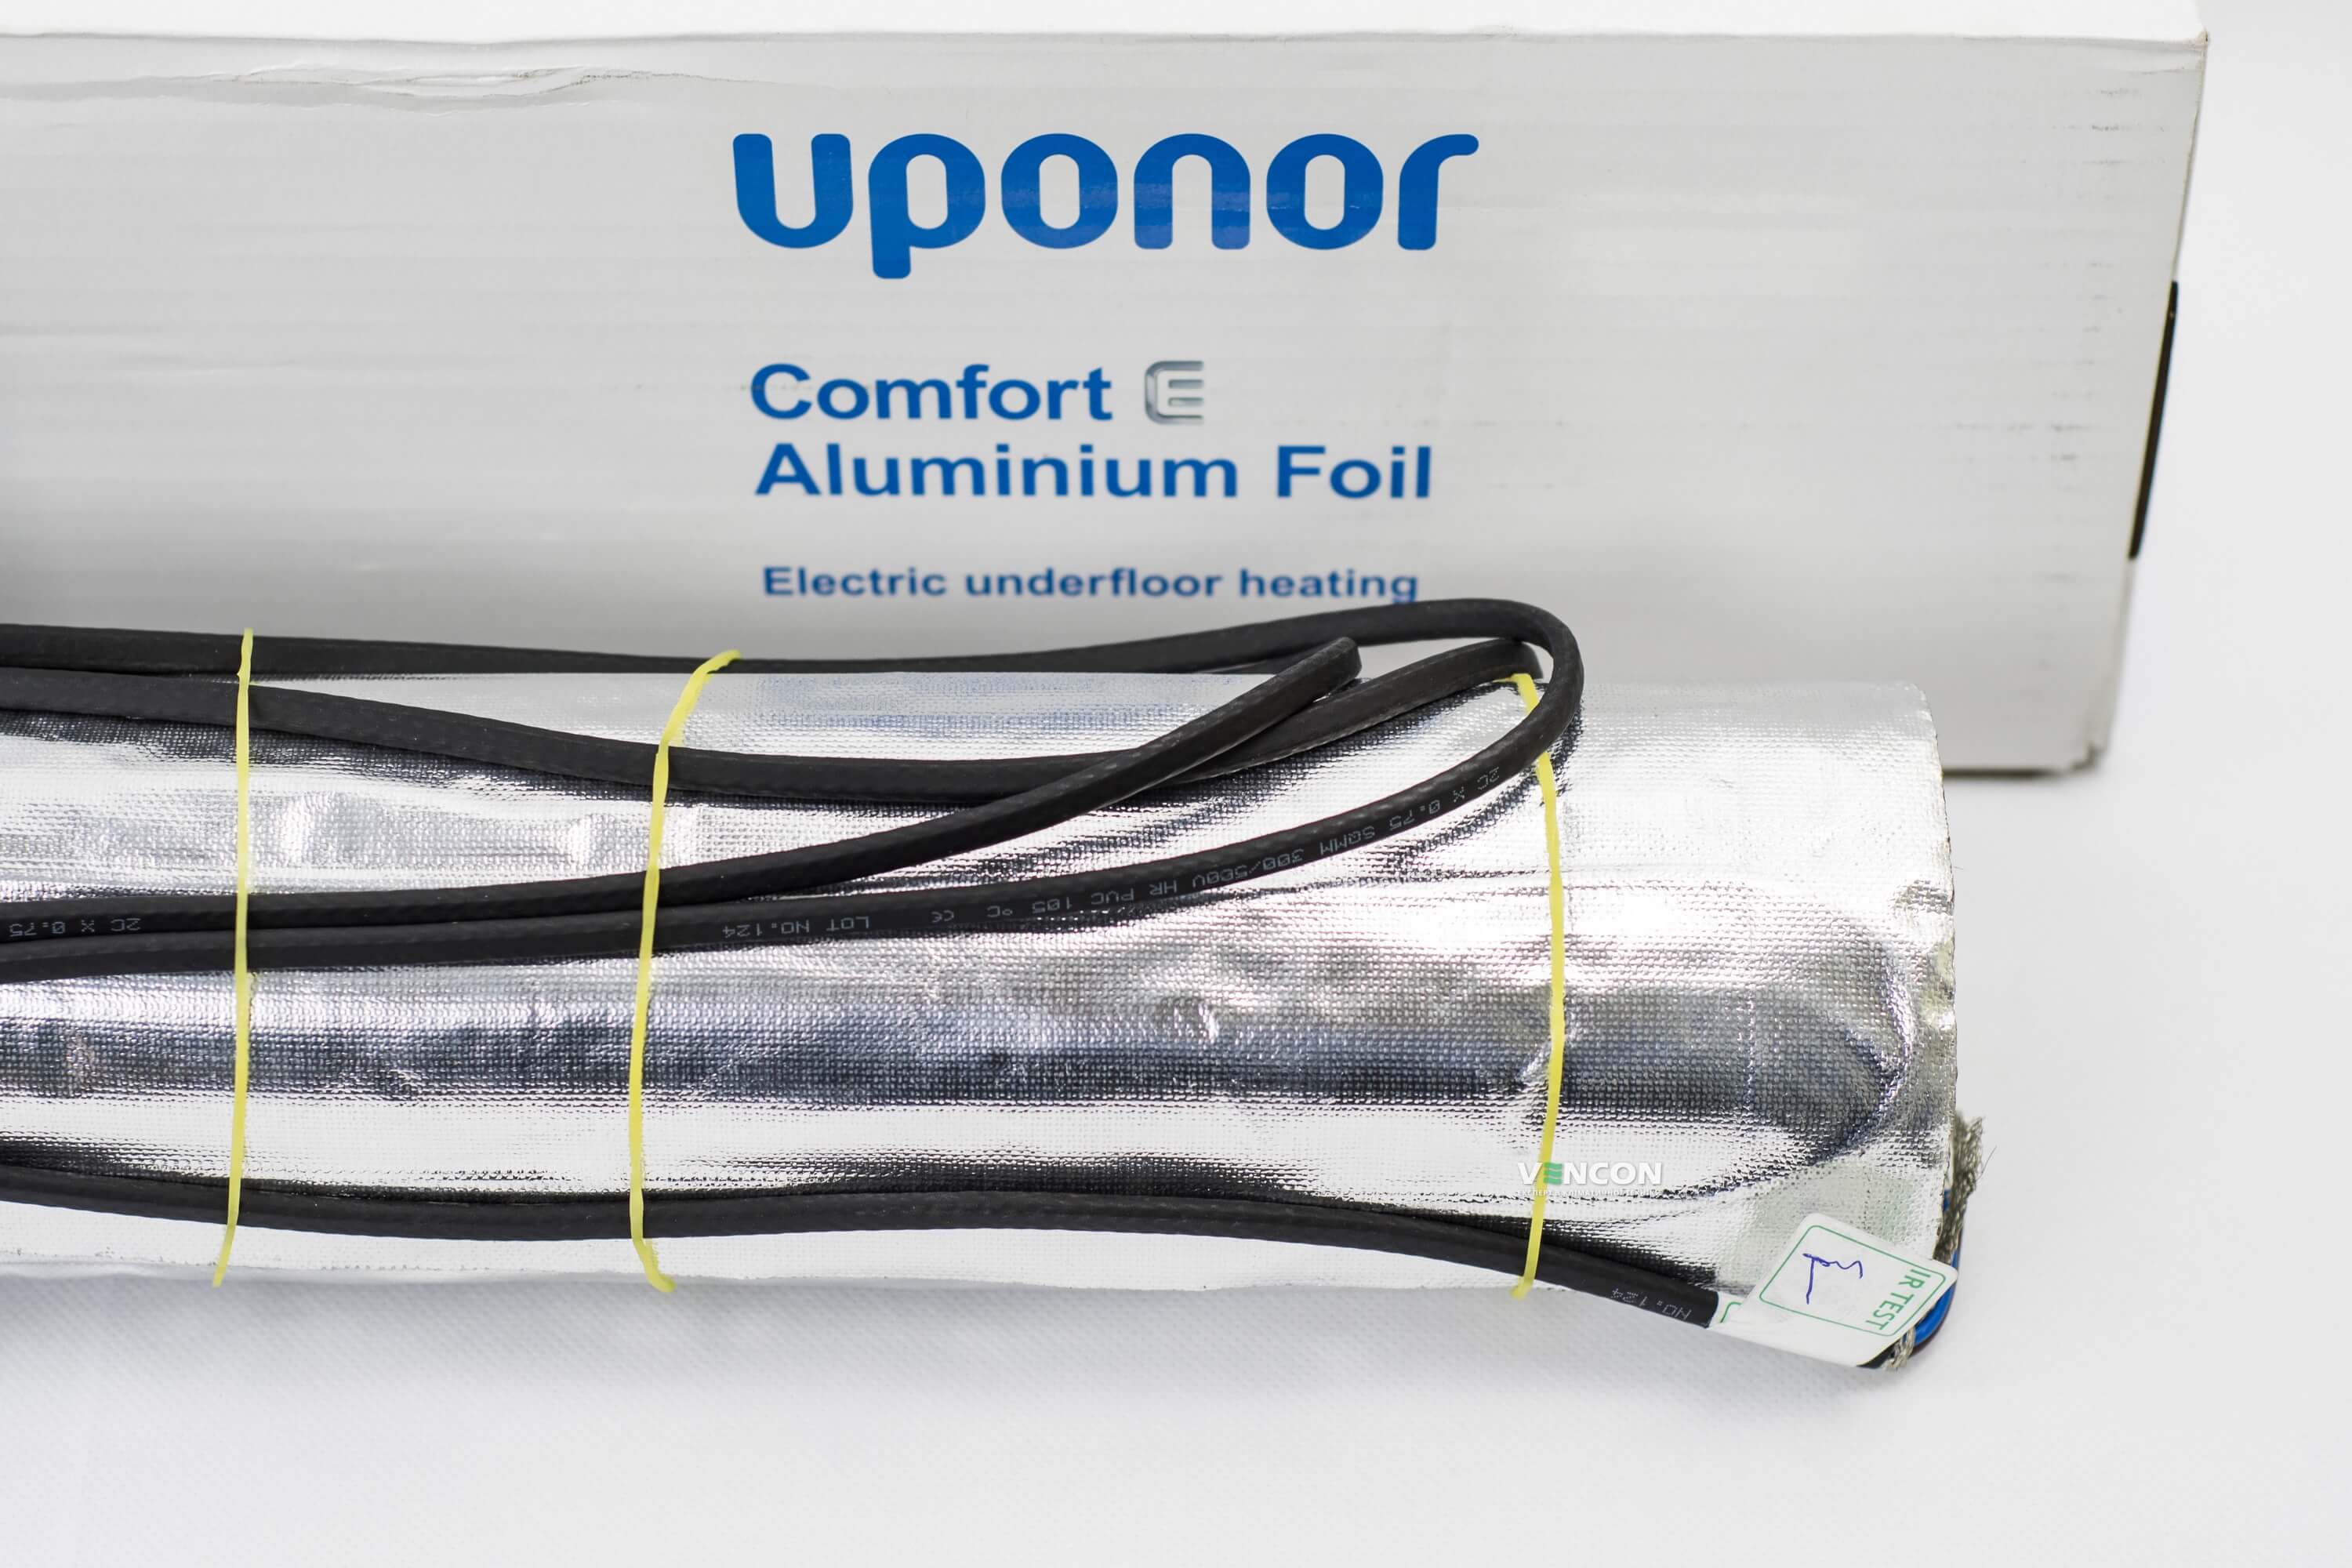 Электрический теплый пол Uponor Aluminium Foil 140-6 отзывы - изображения 5